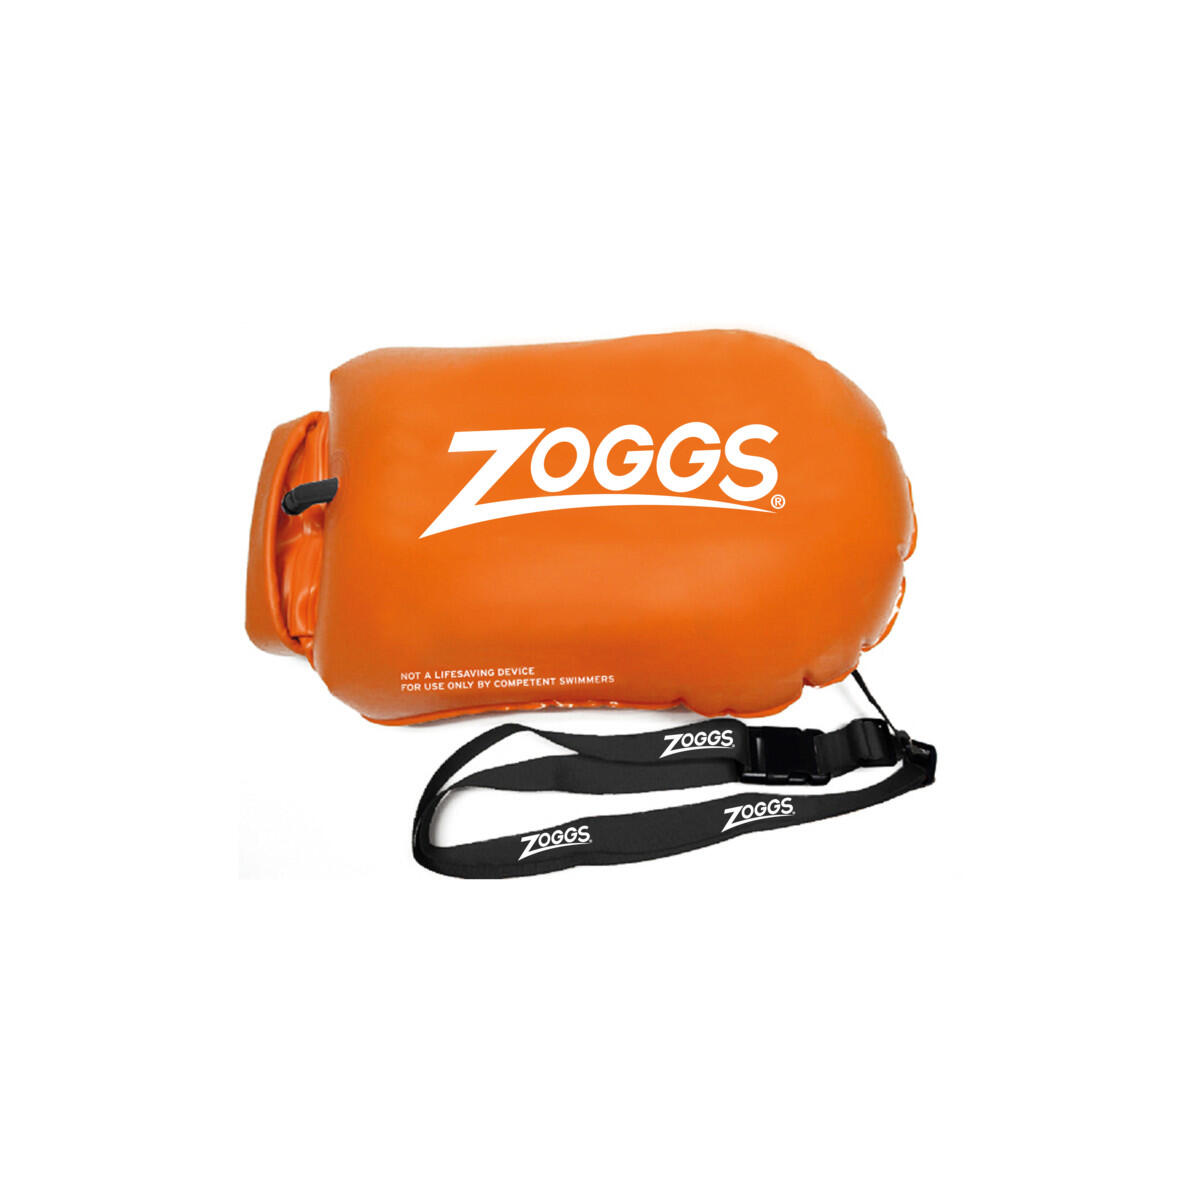 ZOGGS Zoggs Outdoor Hi-Viz Safety Buoy